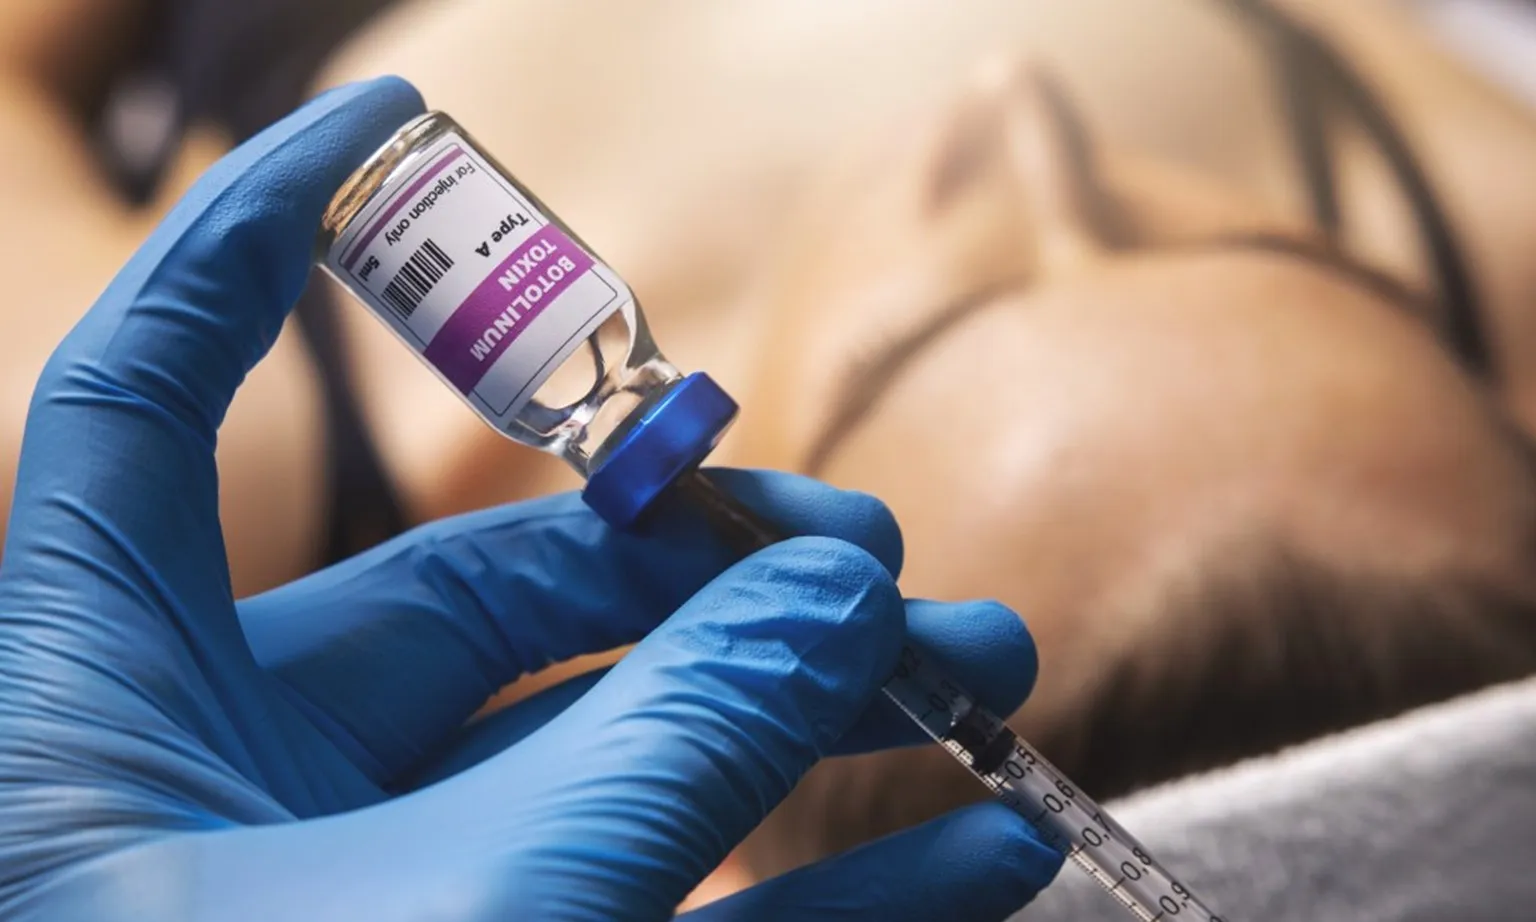 Mỹ: Cảnh báo nhiều trường hợp nhập viện vì tiêm botox giả